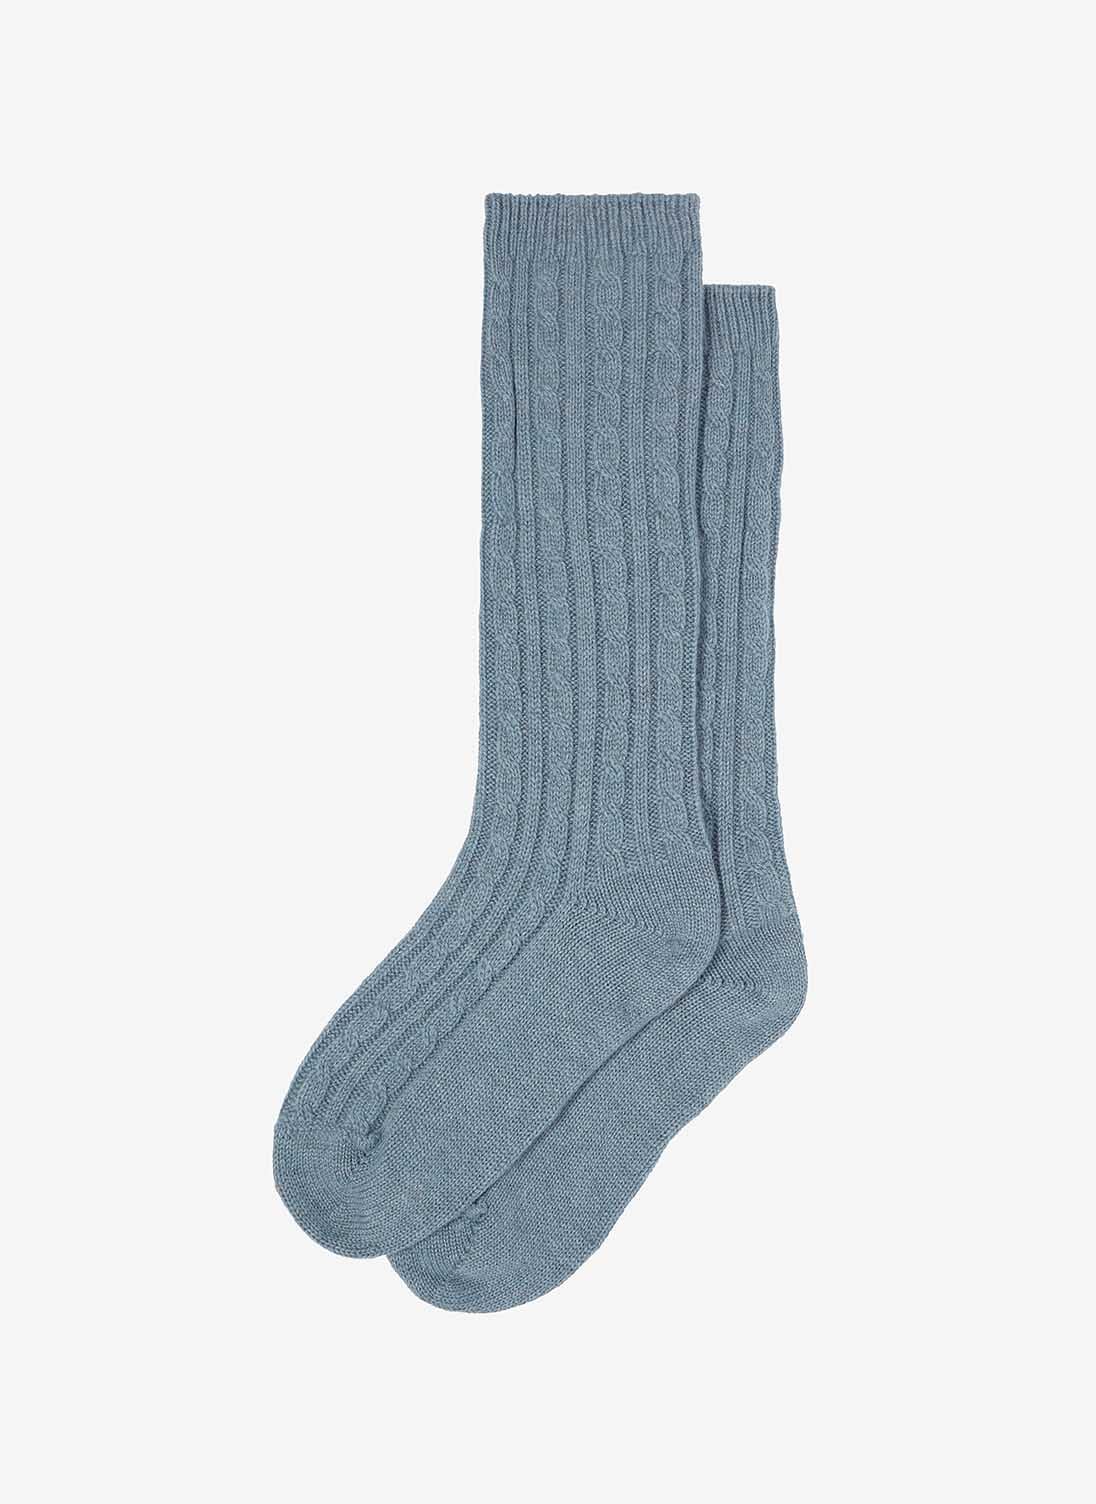 Mist Cashmere Bed Socks | Women's Socks & Tights | Brora